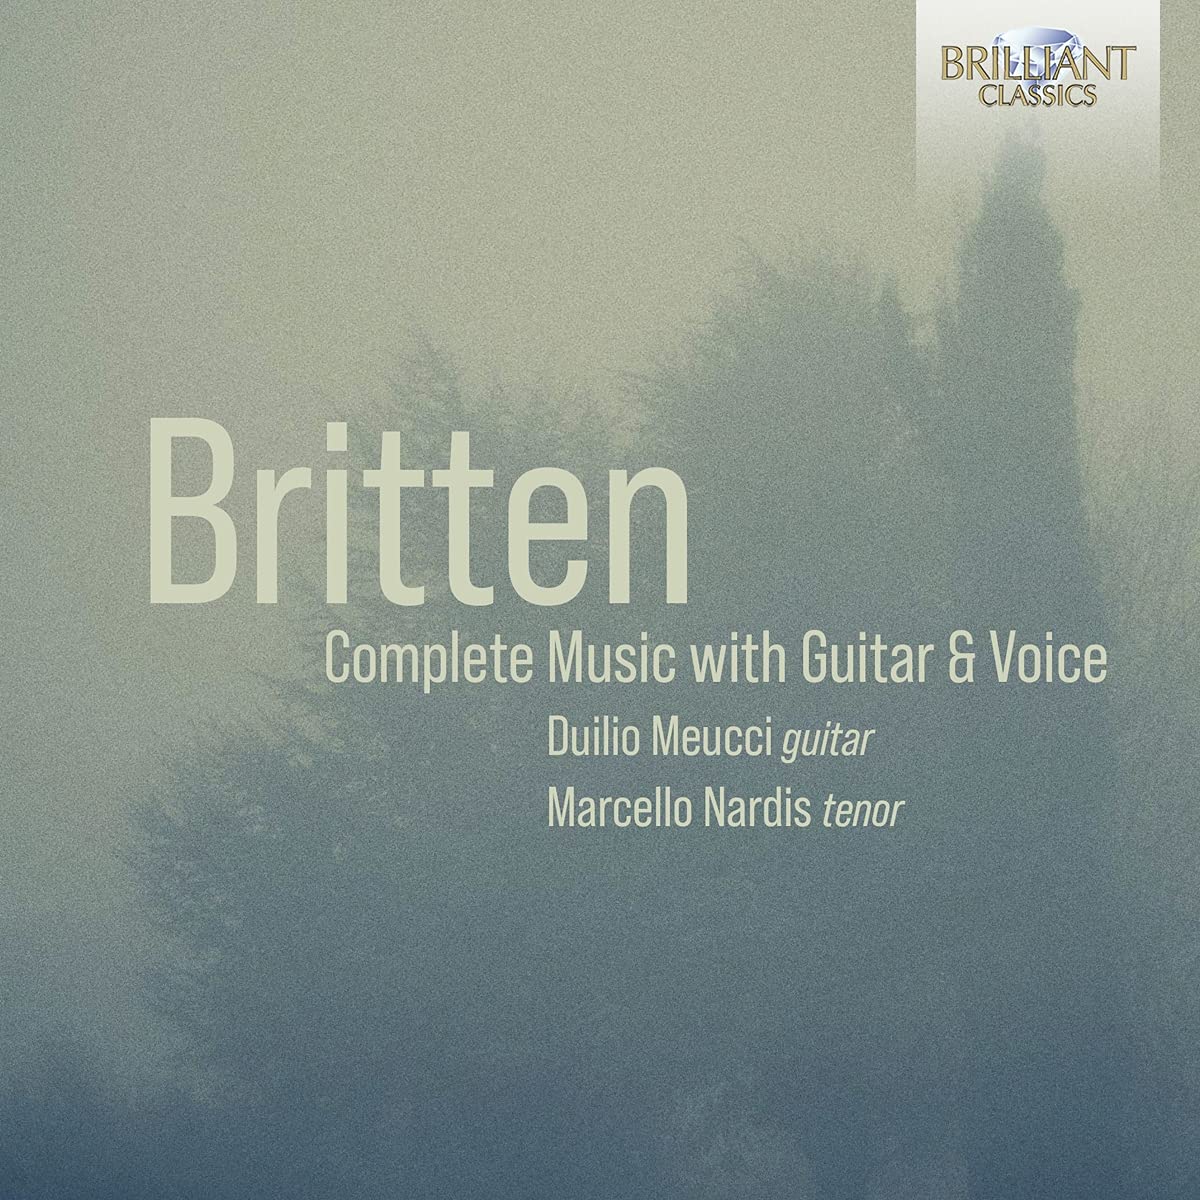 Novedades discográficas: «Britten: Complete Music with Guitar & Voice » editado en Brilliant Classics